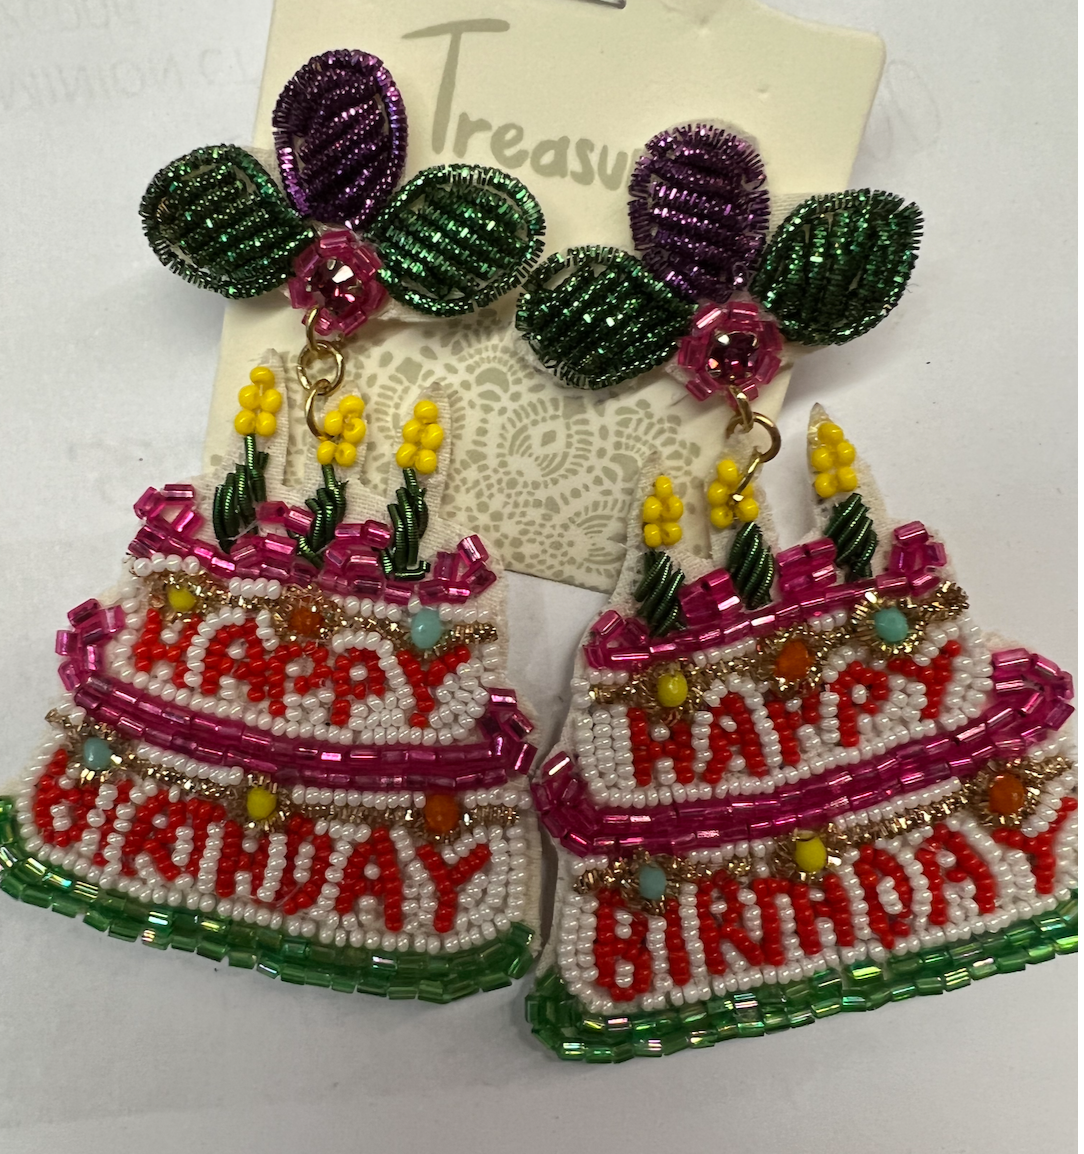 Birthday Earrings